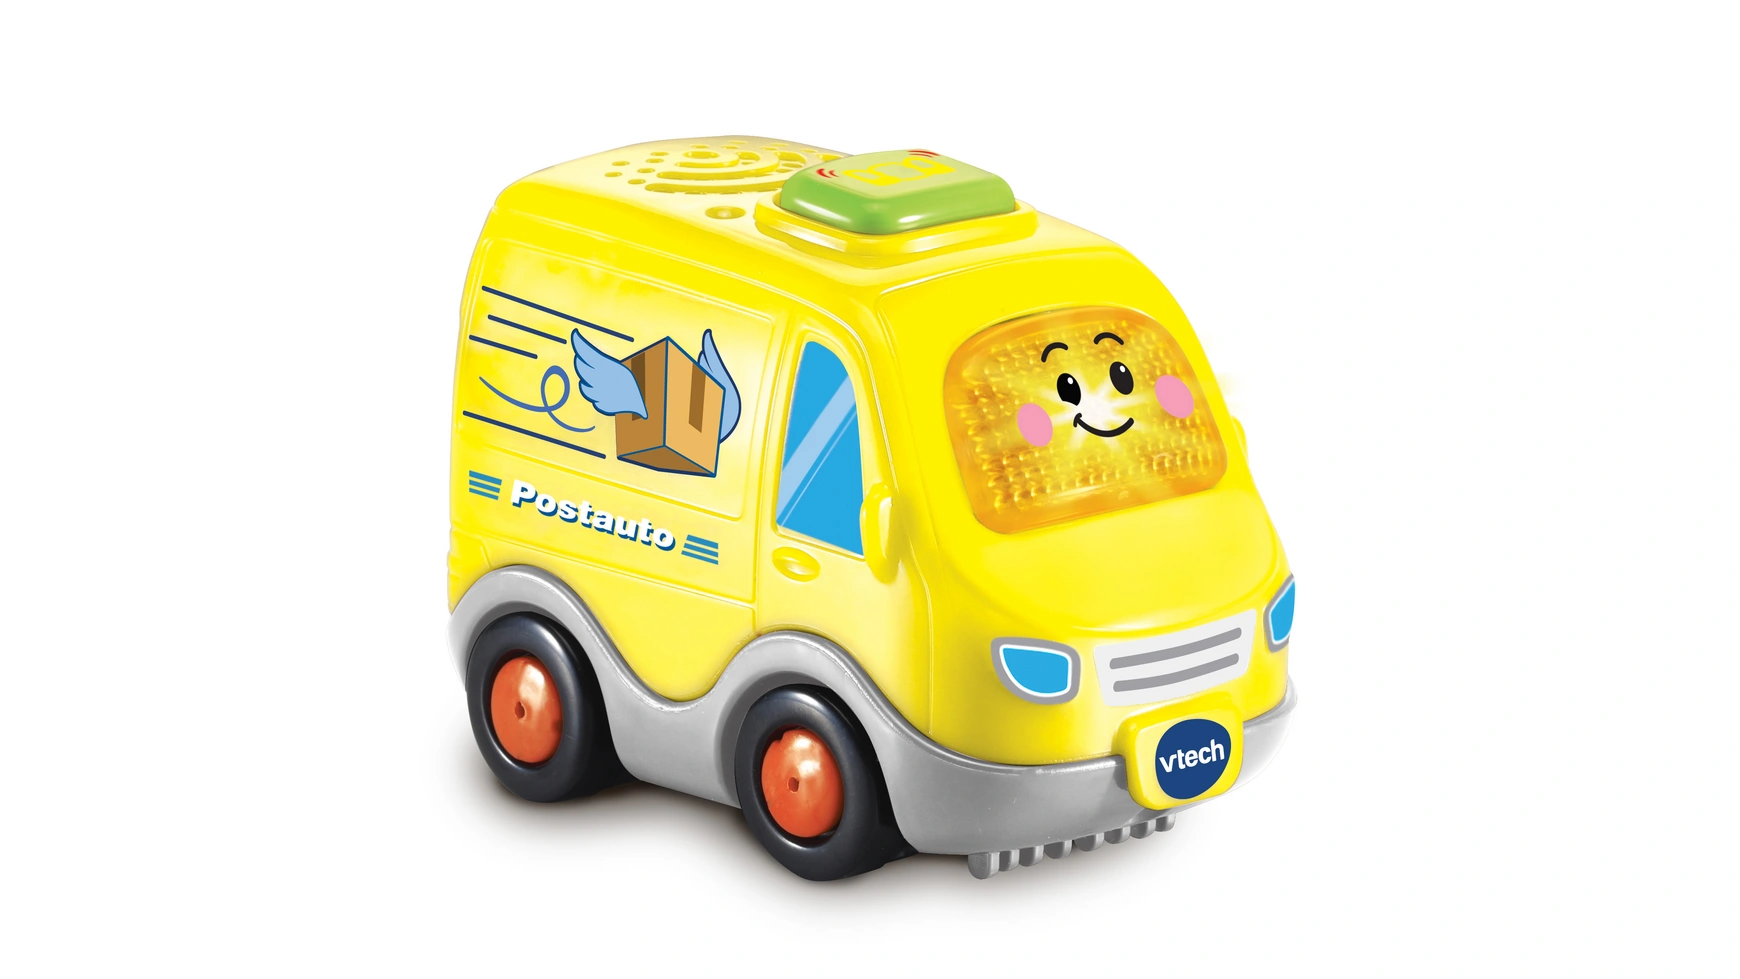 VTech Tut Tut Baby Flitzer Postbus, интерактивная детская машинка